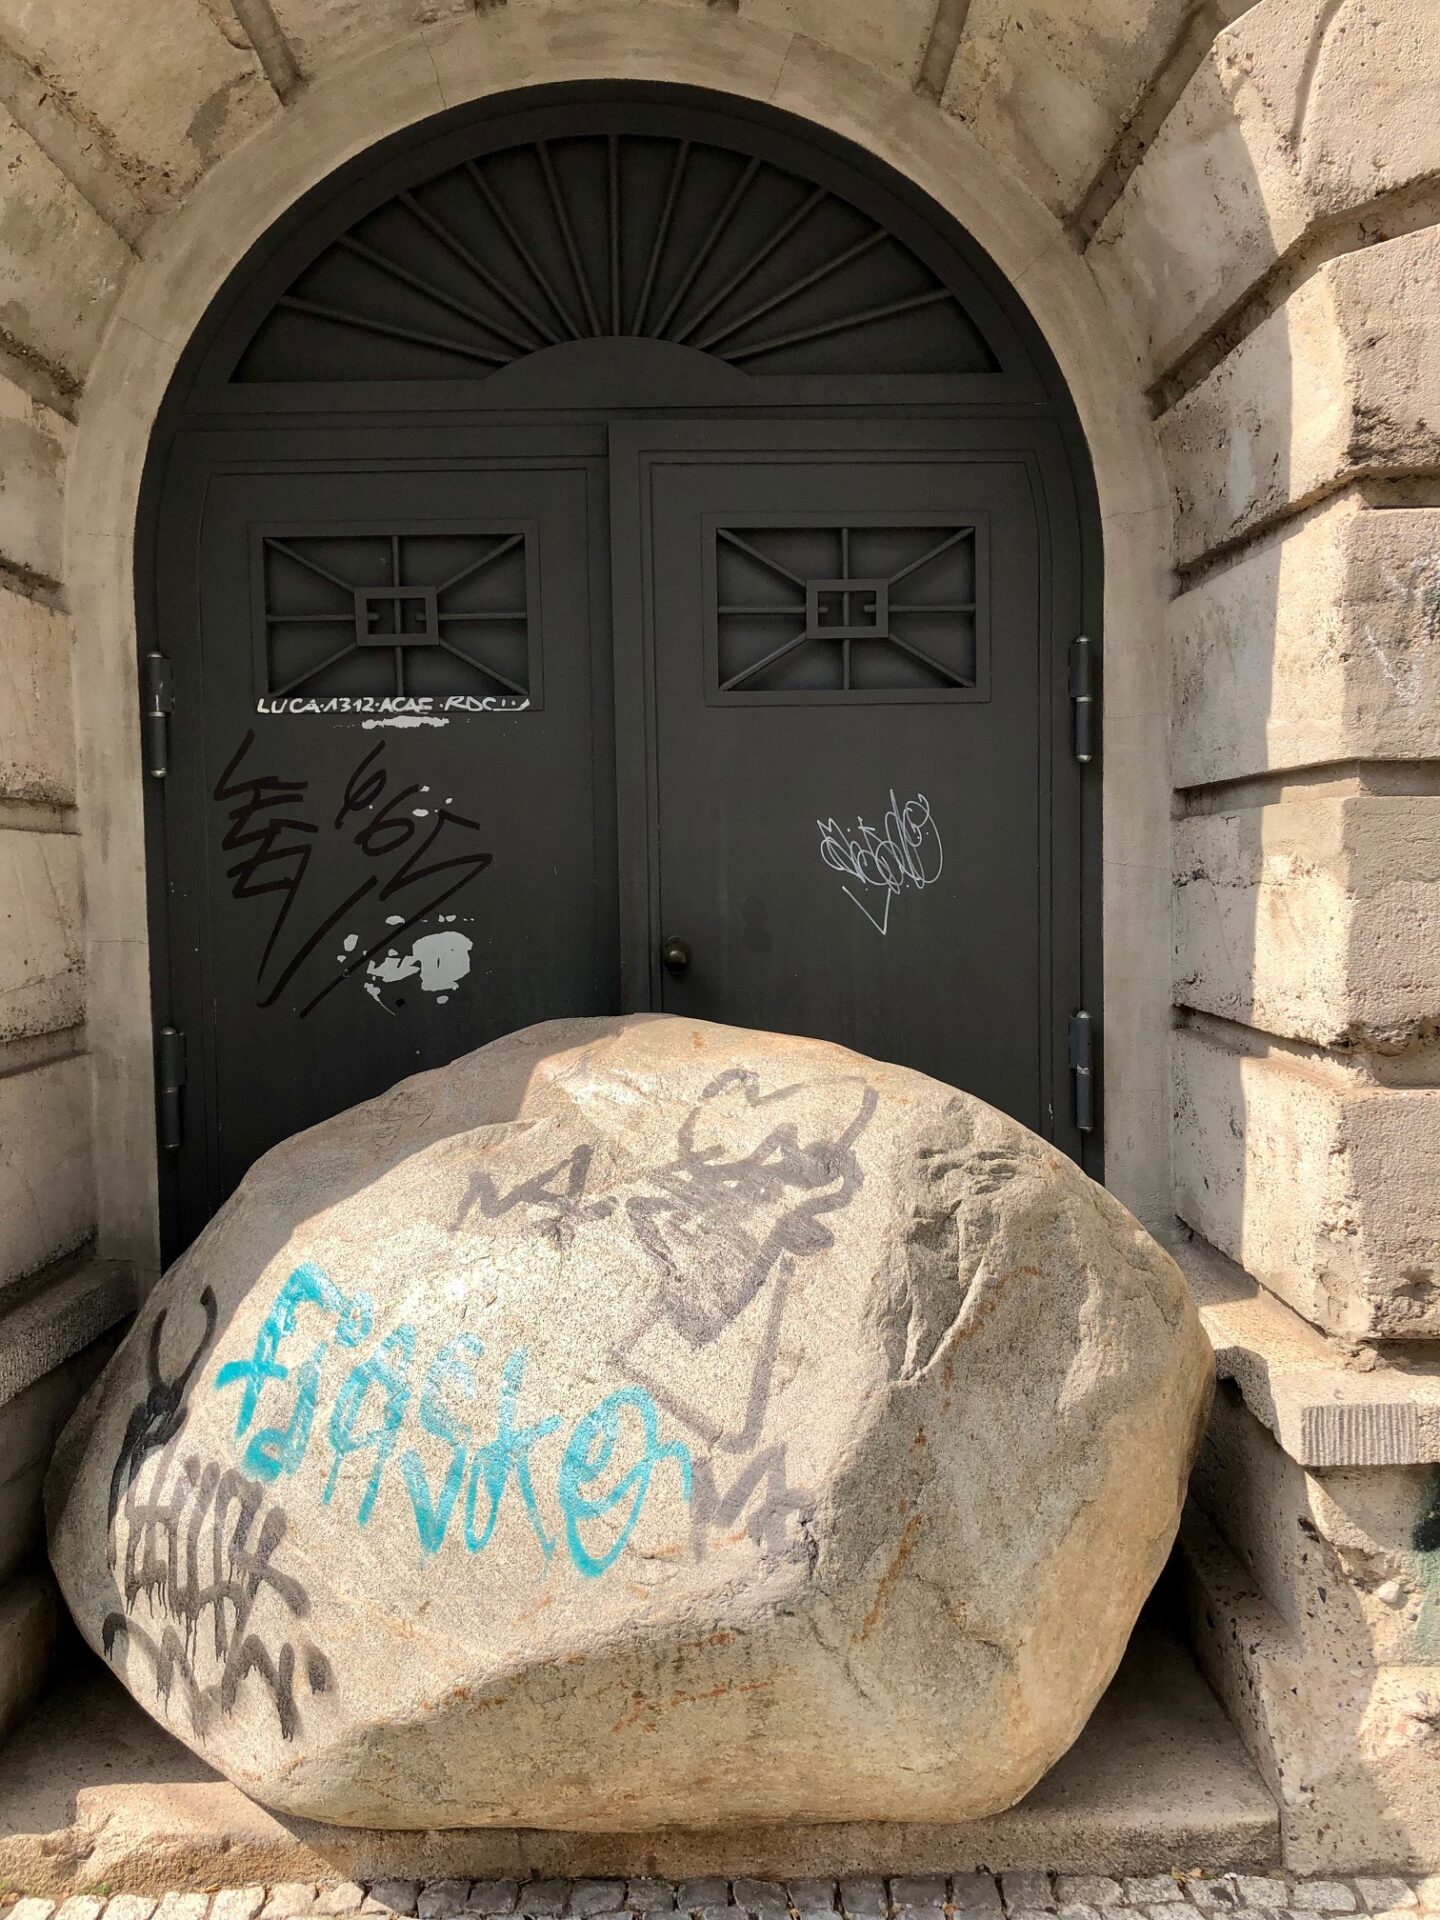 Eingangsfür vom Bunker, Fels vor der Tür, Botos Bunker in Berlin, Graffiti
